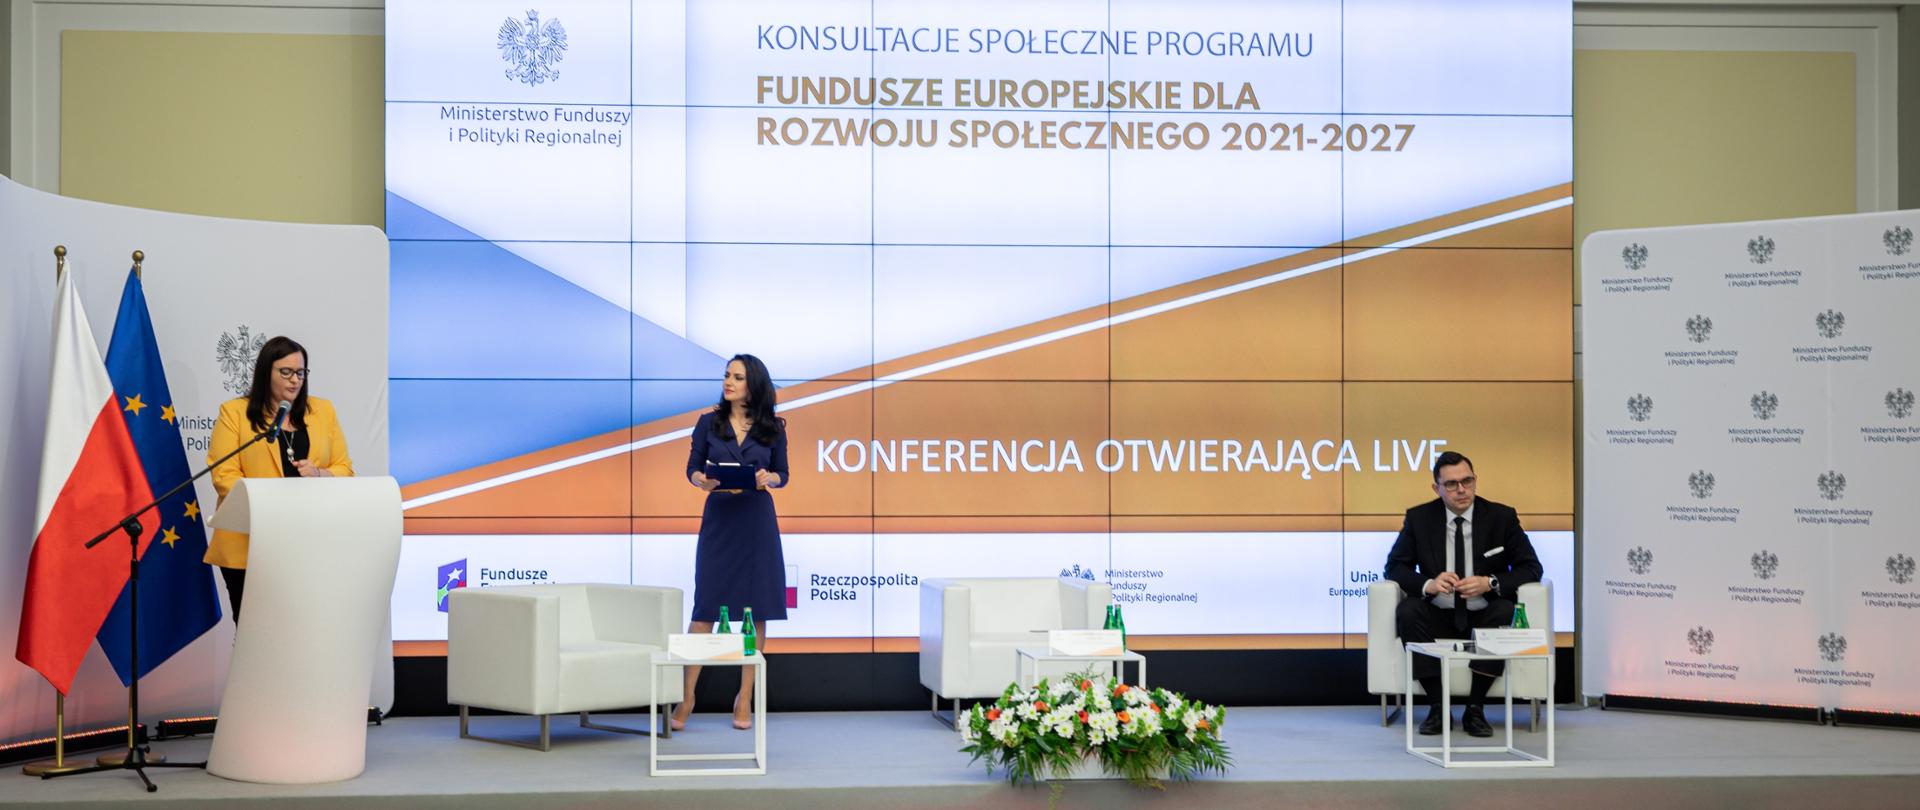 W sali konferencyjnej na scenie są trzy osoby. W mównicy po lewej stronie stoi wiceminister Małgorzata Jarosińska-Jedynak. Obok stoi kobieta. Dalej w fotelu siedzi mężczyzna. Za nimi na ekranie napis: Konsultacje Programu Fundusze Europejskie dla Rozwoju Społecznego 2021-2027, Konferencja otwierająca". Obok mównicy dwie flagi PL i UE.